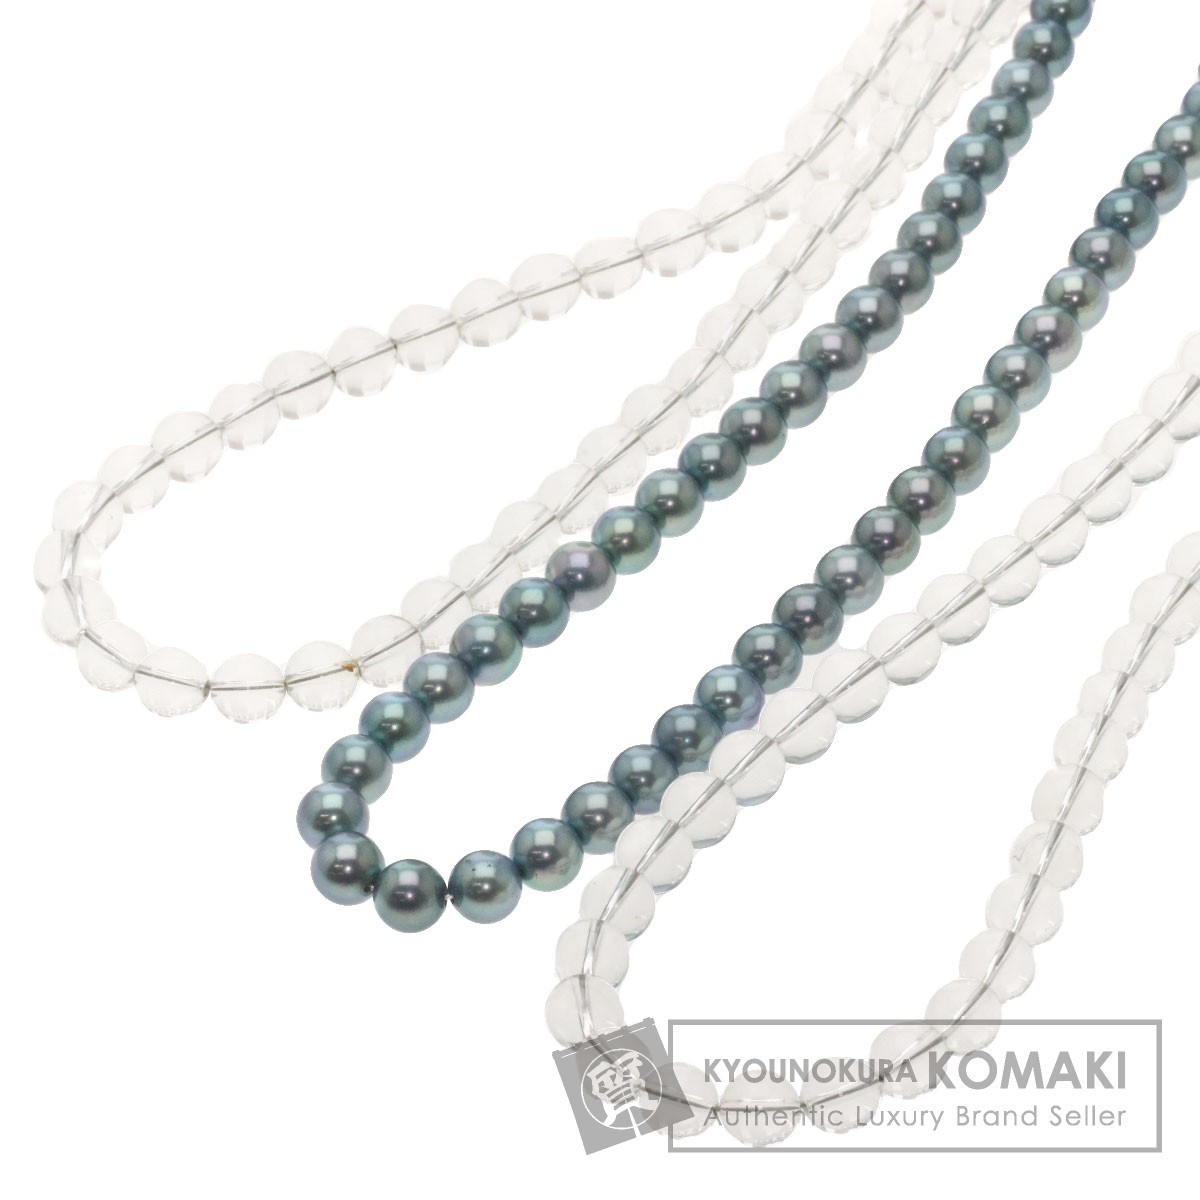 優れた品質 真珠 アコヤパール ジュエリー 水晶 中古品 金属製 ネックレス 3点セット アコヤ真珠